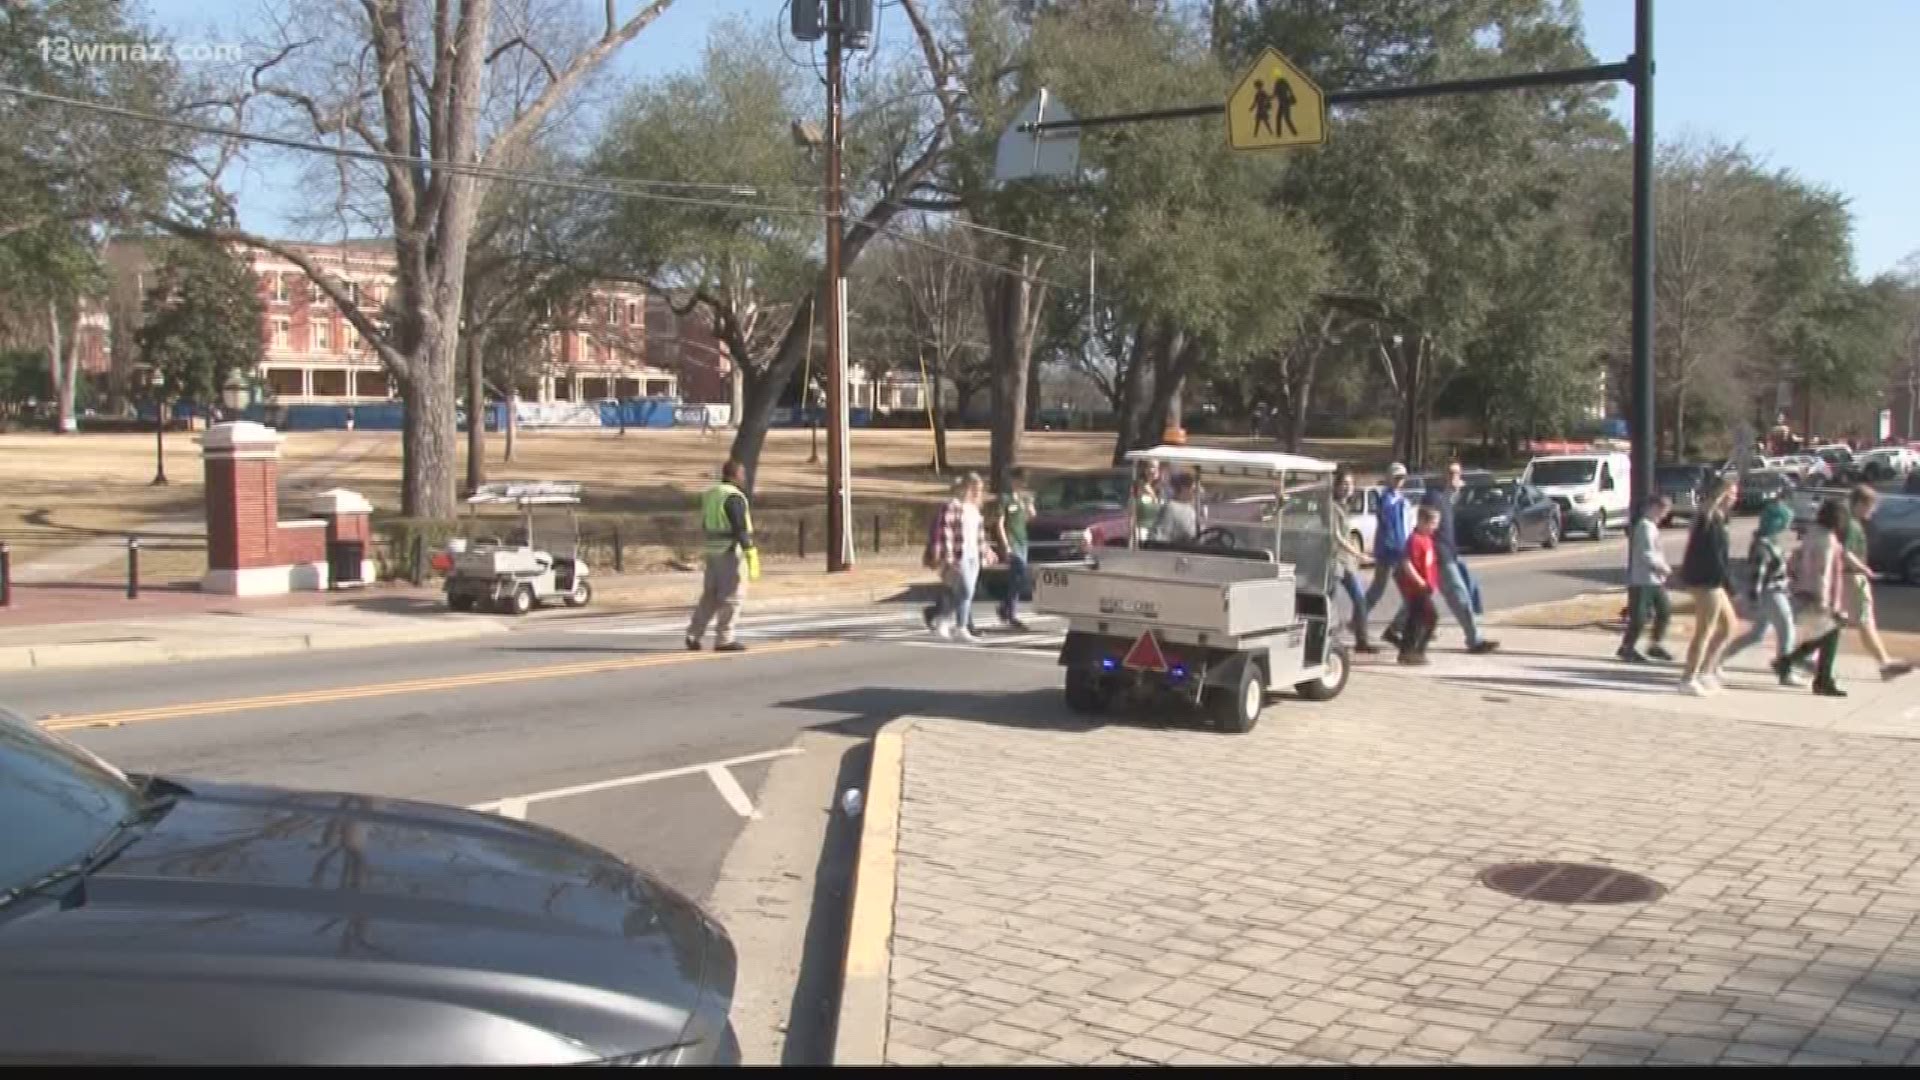 Pedestrian safety a concern around GCSU campus